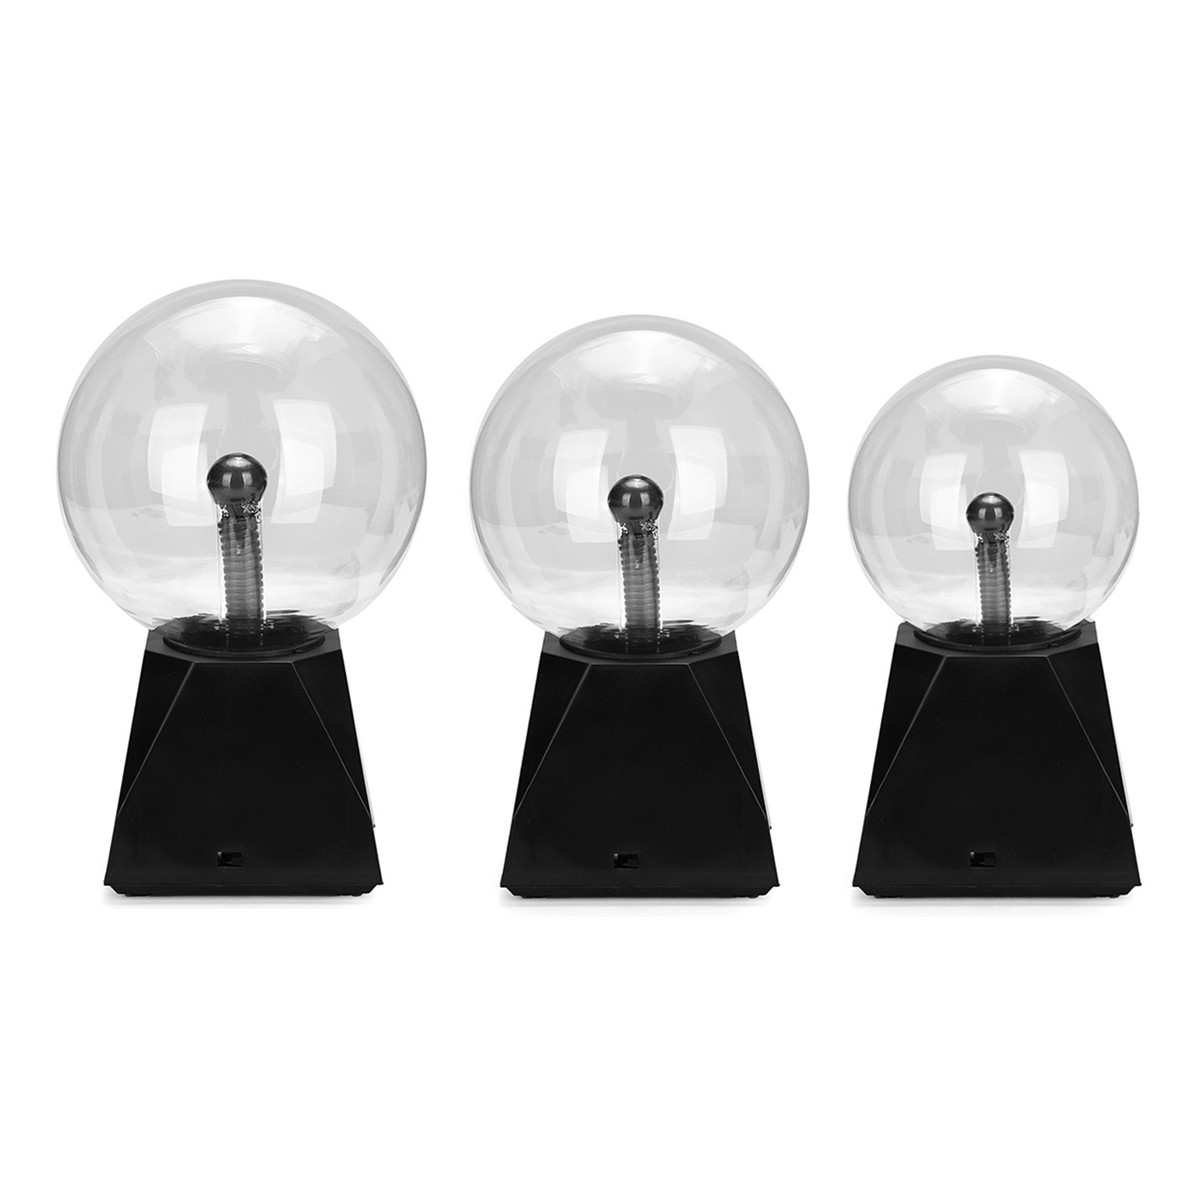 

Плазменный шар Touch Black Base USB Sphere Lightning Table Лампа Светлая вечеринка Волшебный